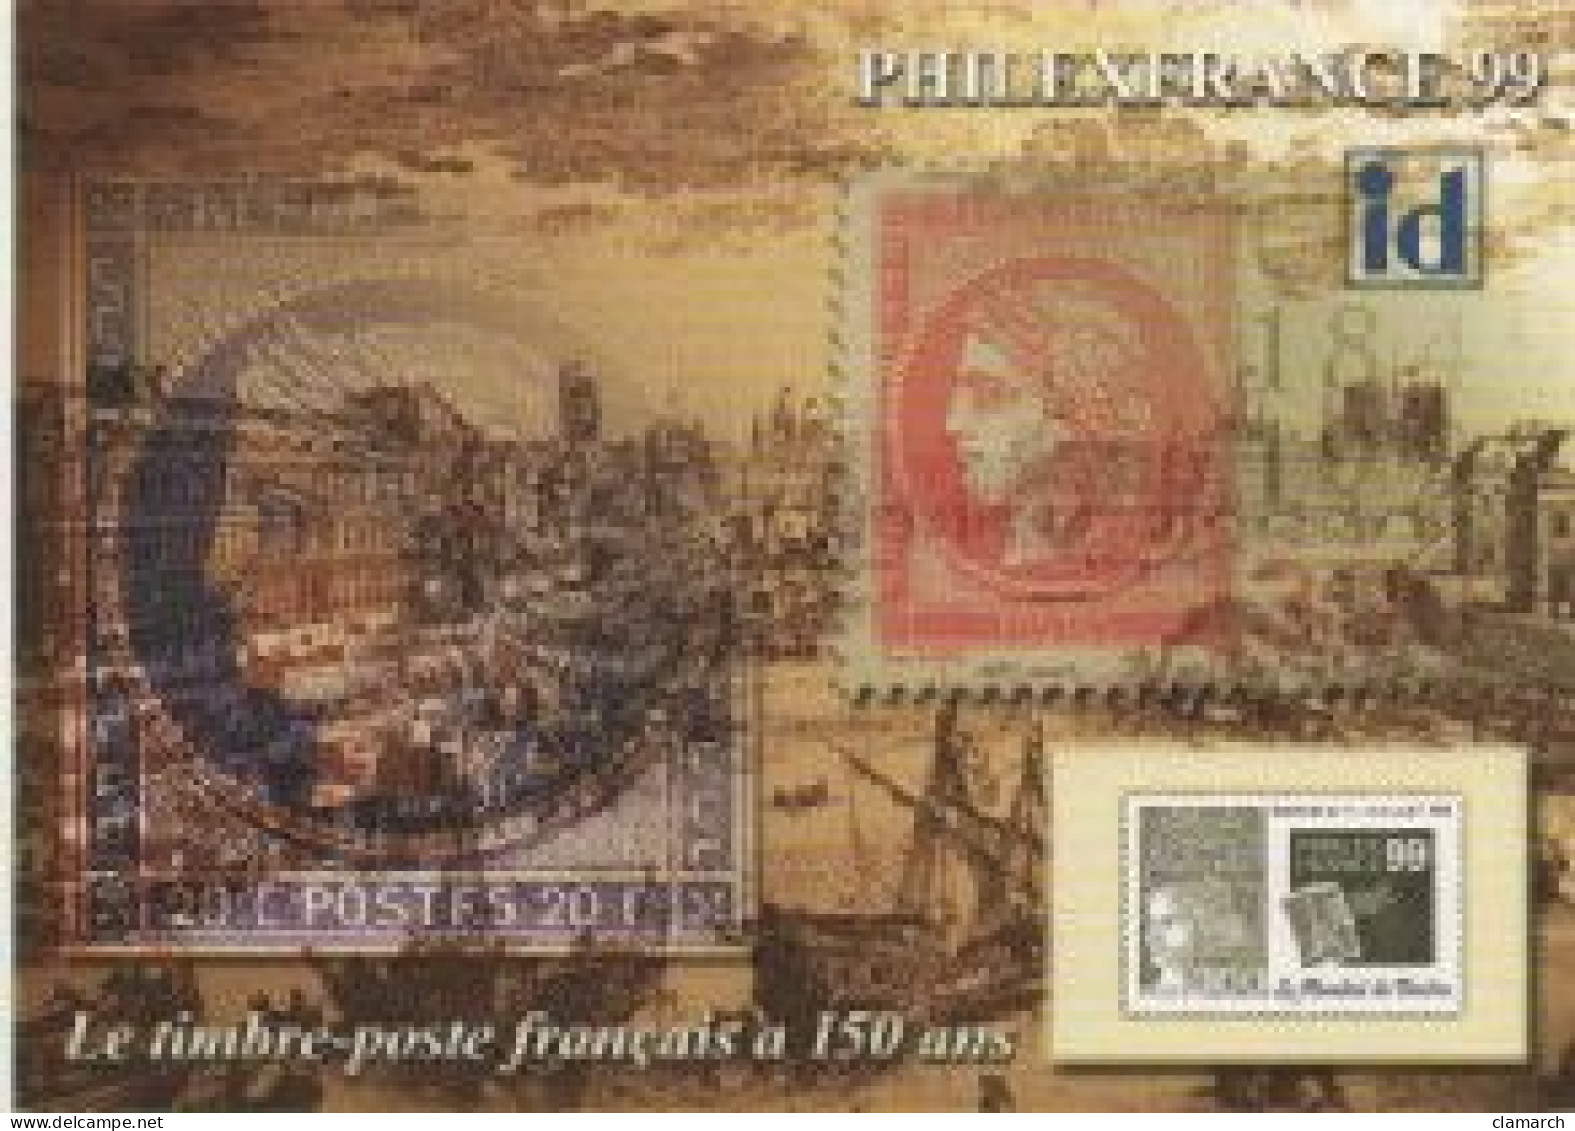 FRANCE-17 cartes Souvenirs philatéliques-frais d'envoi pour la F 4.30